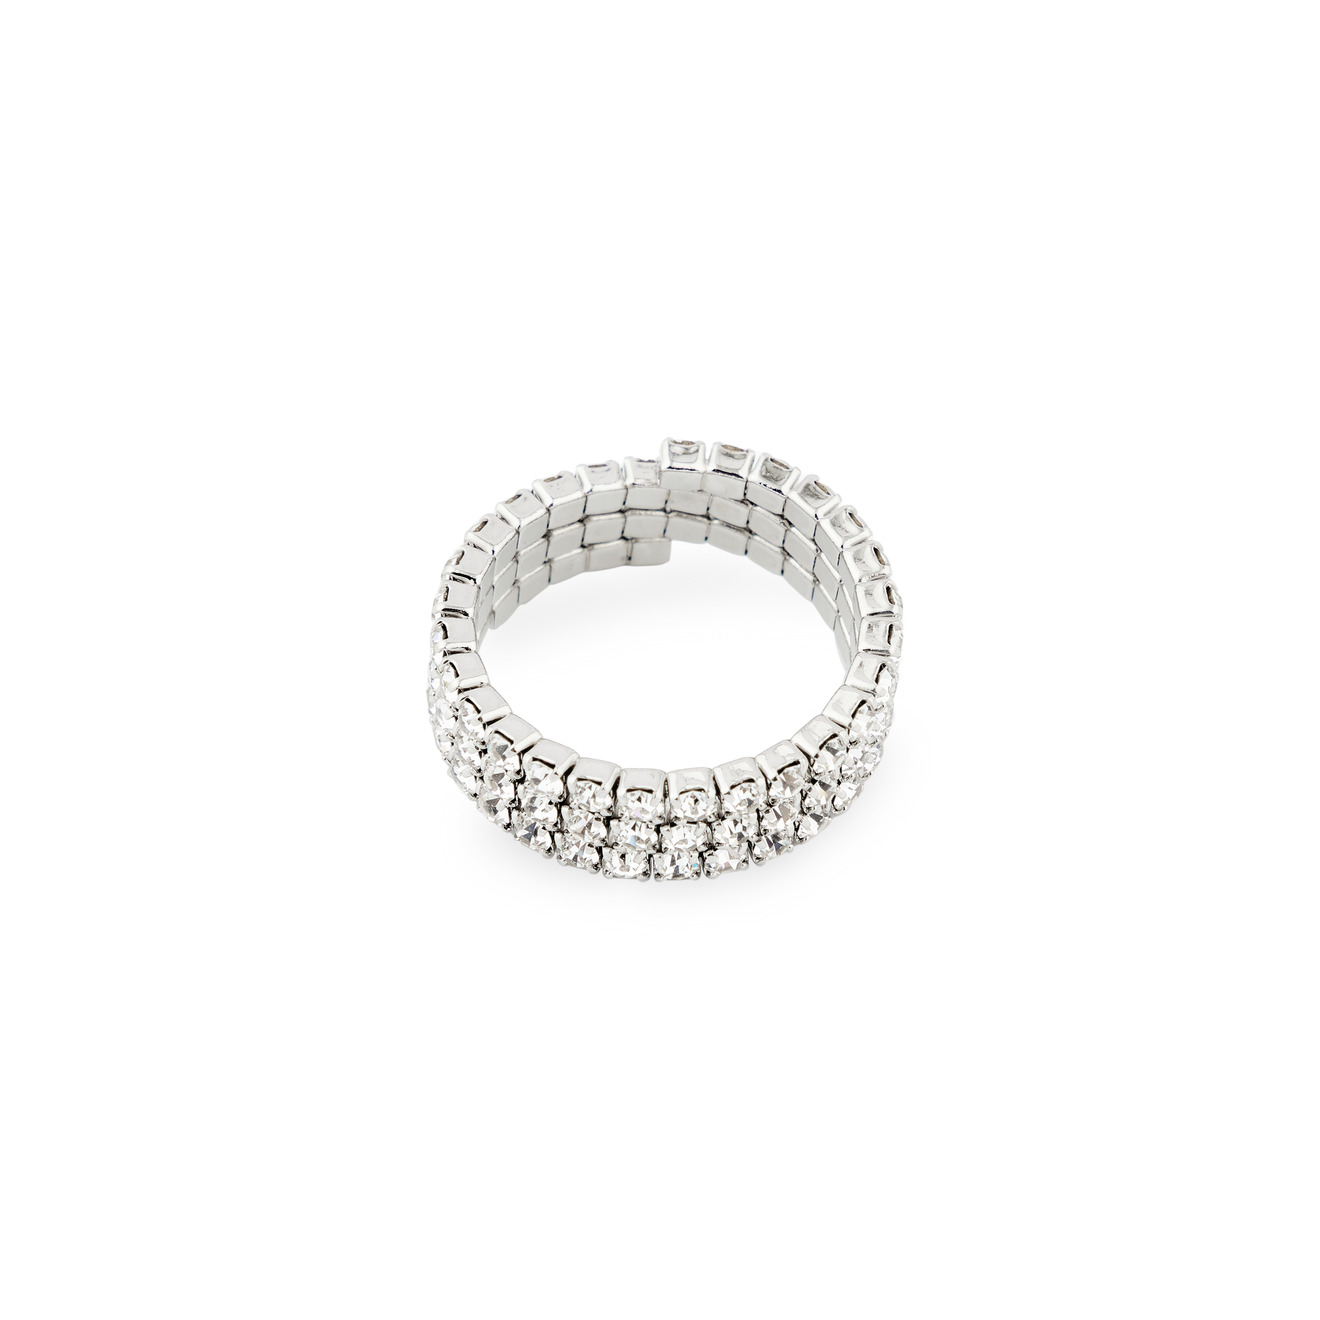 Herald Percy Серебристое кольцо из кристаллов herald percy серебристое фигурное кольцо с черным сердцем